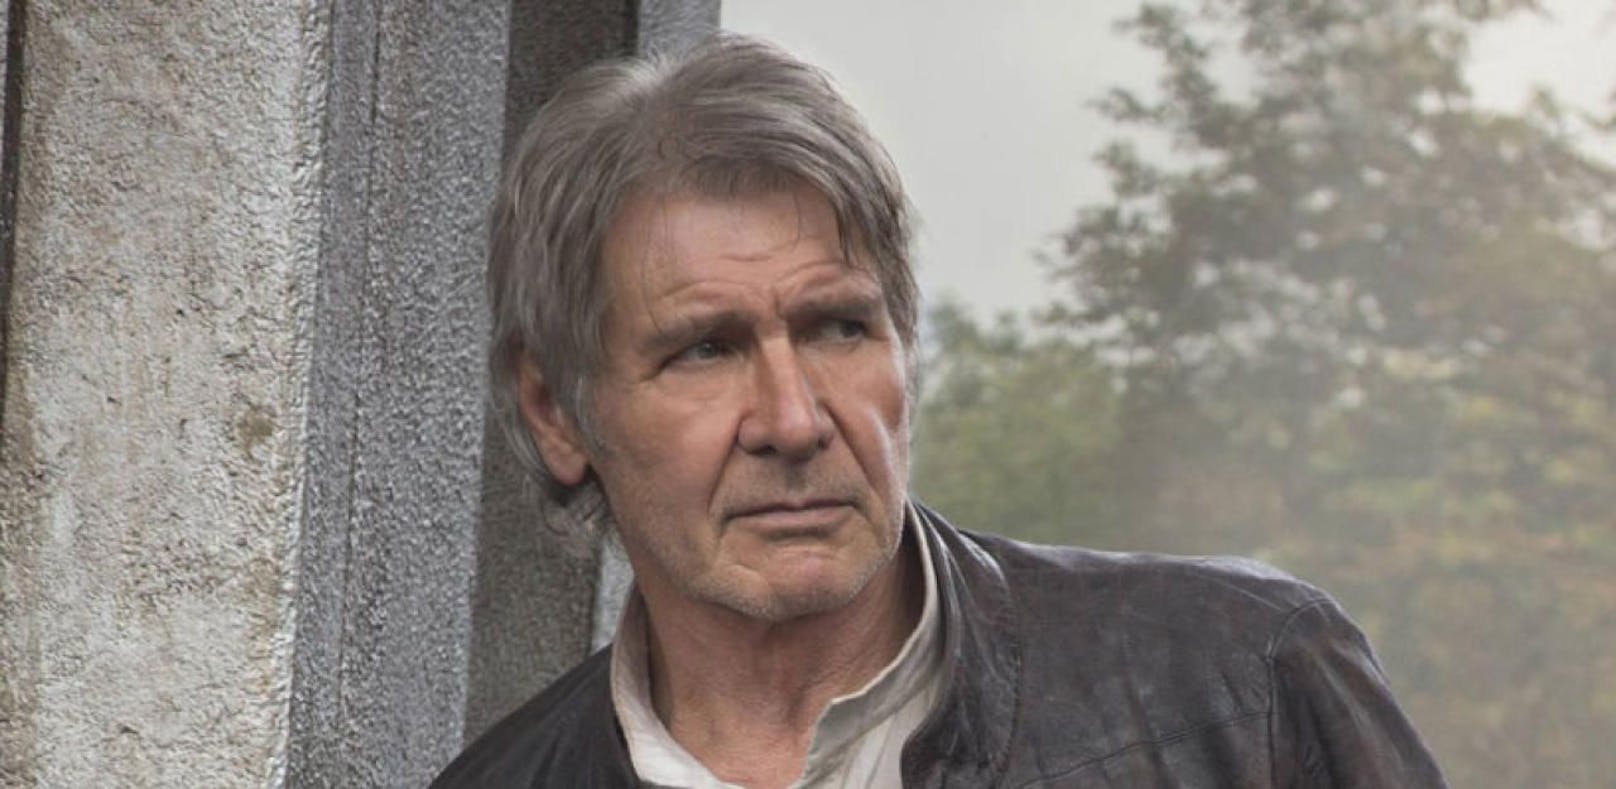 Harrison Ford darf seine Fluglizenz behalten